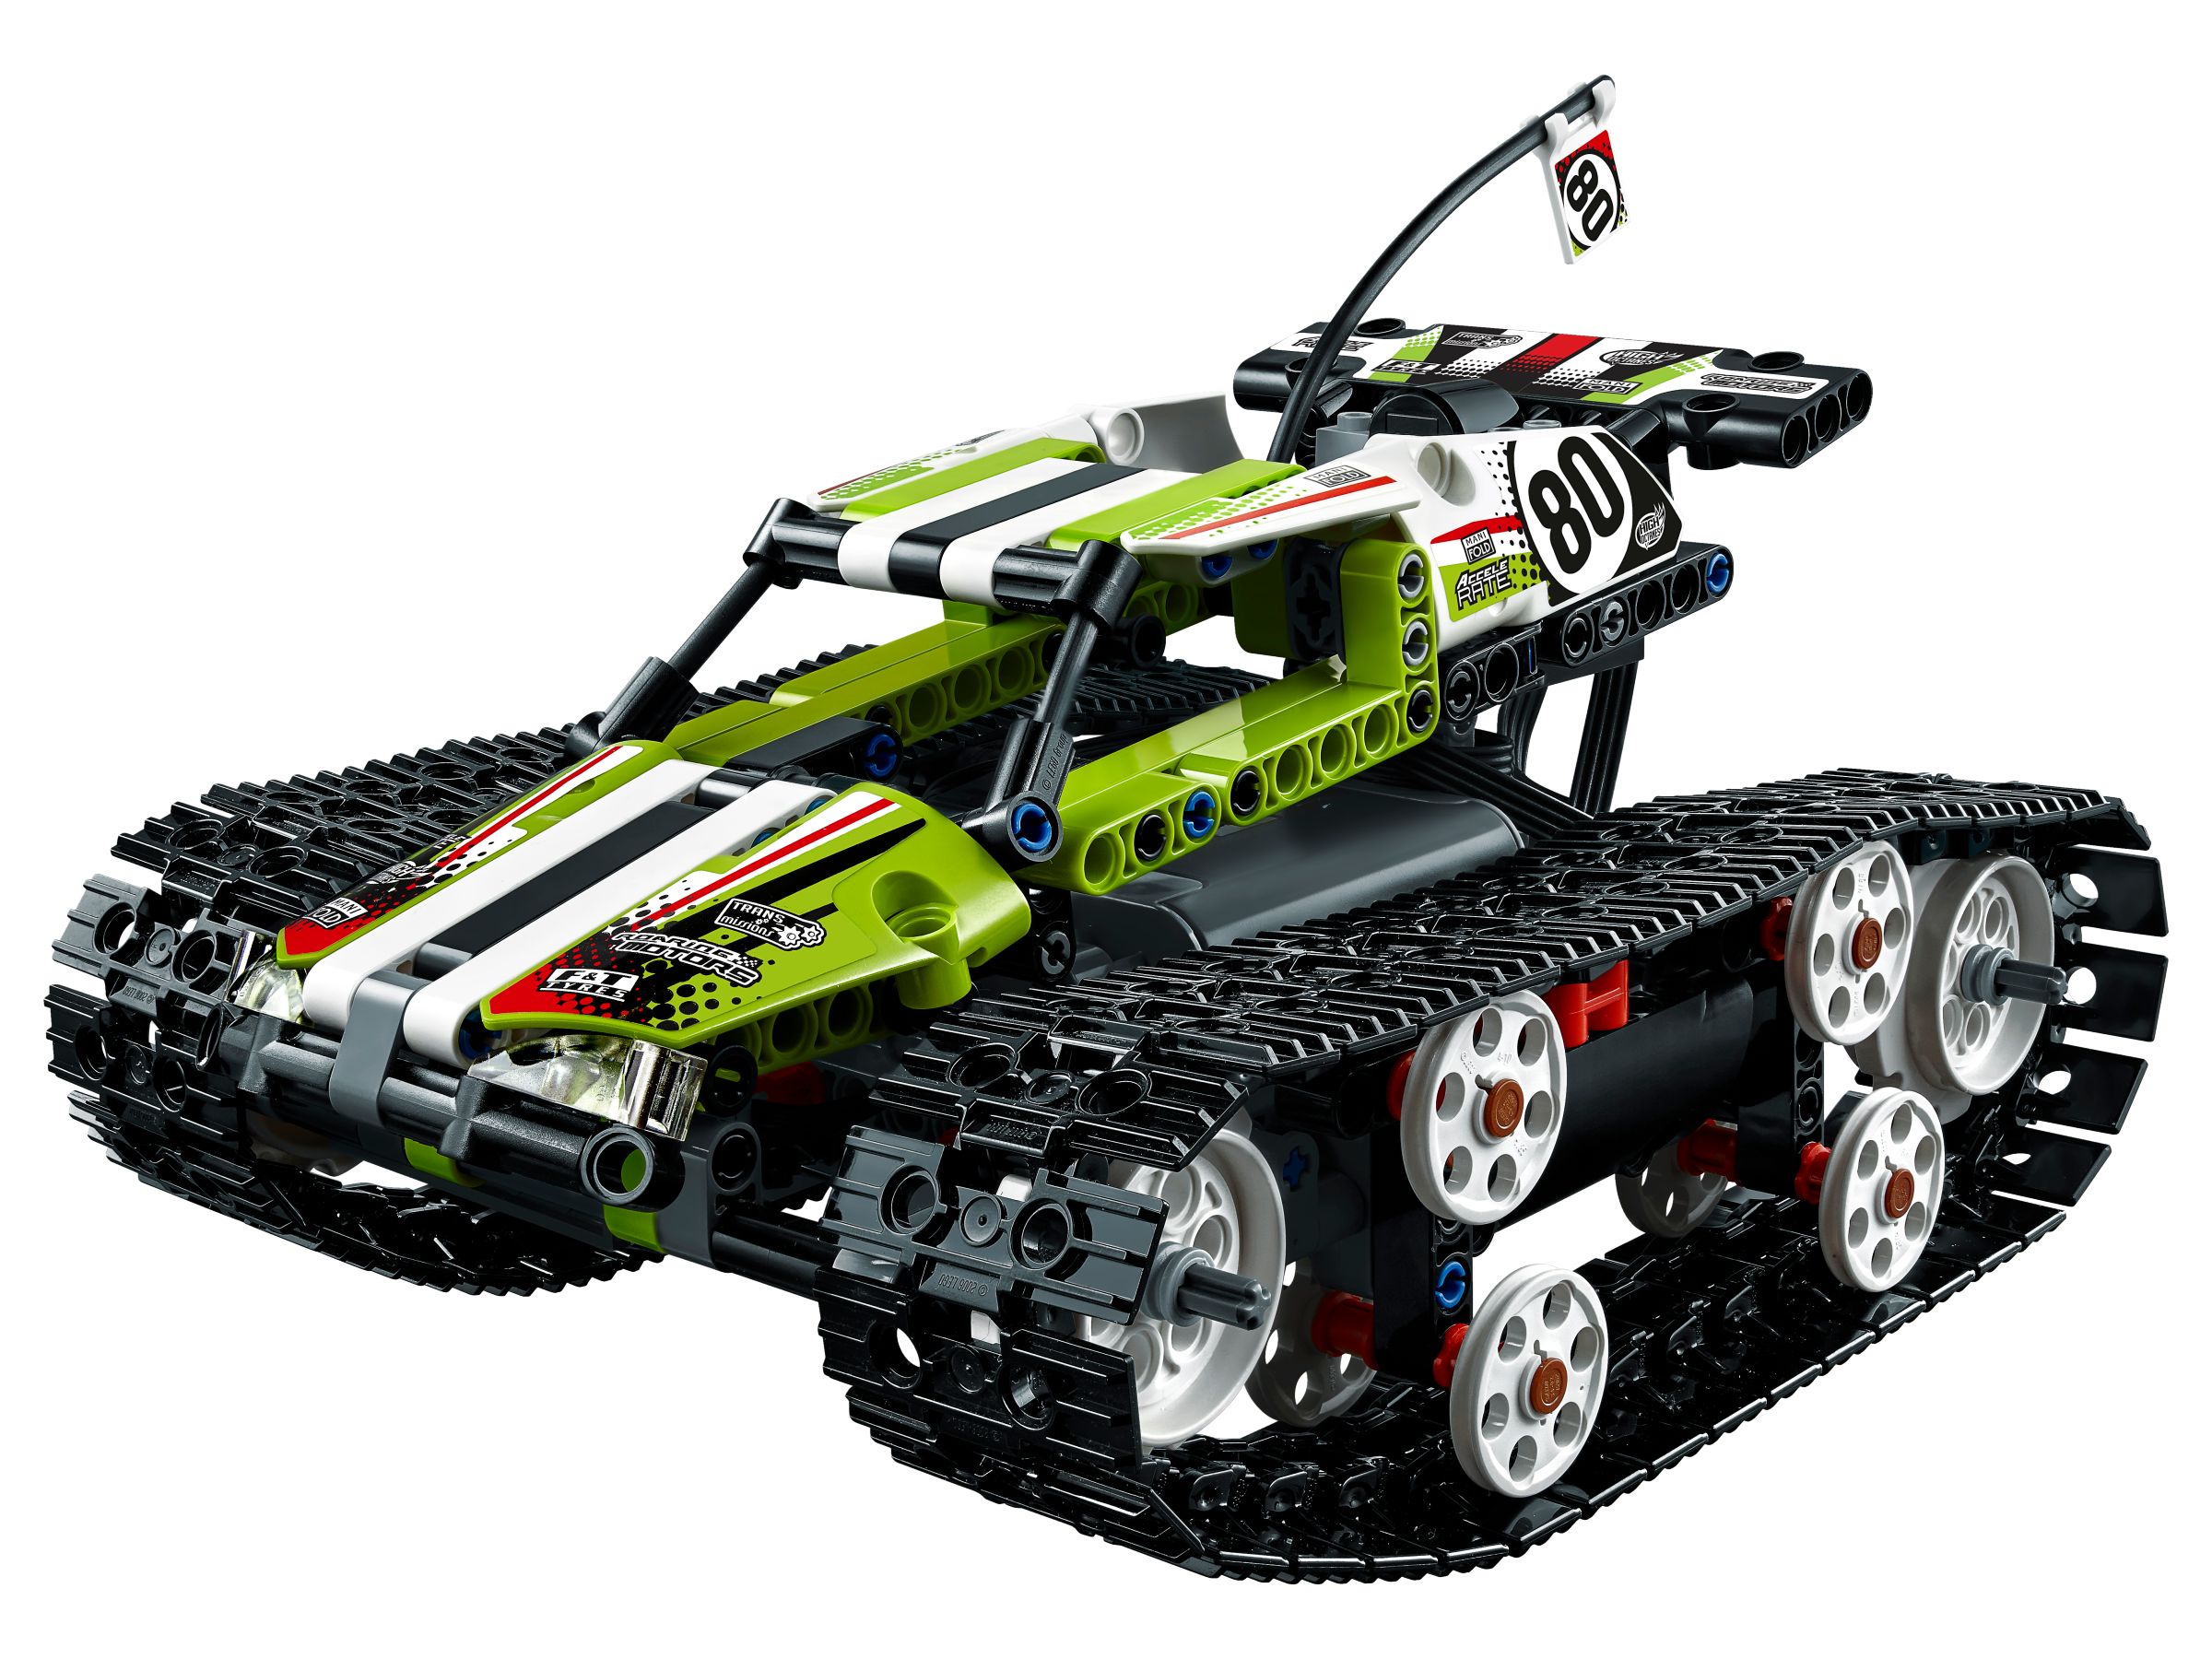 LEGO Technic 42065 Ferngesteuerter Tracked Racer LEGO_42065_alt2.jpg